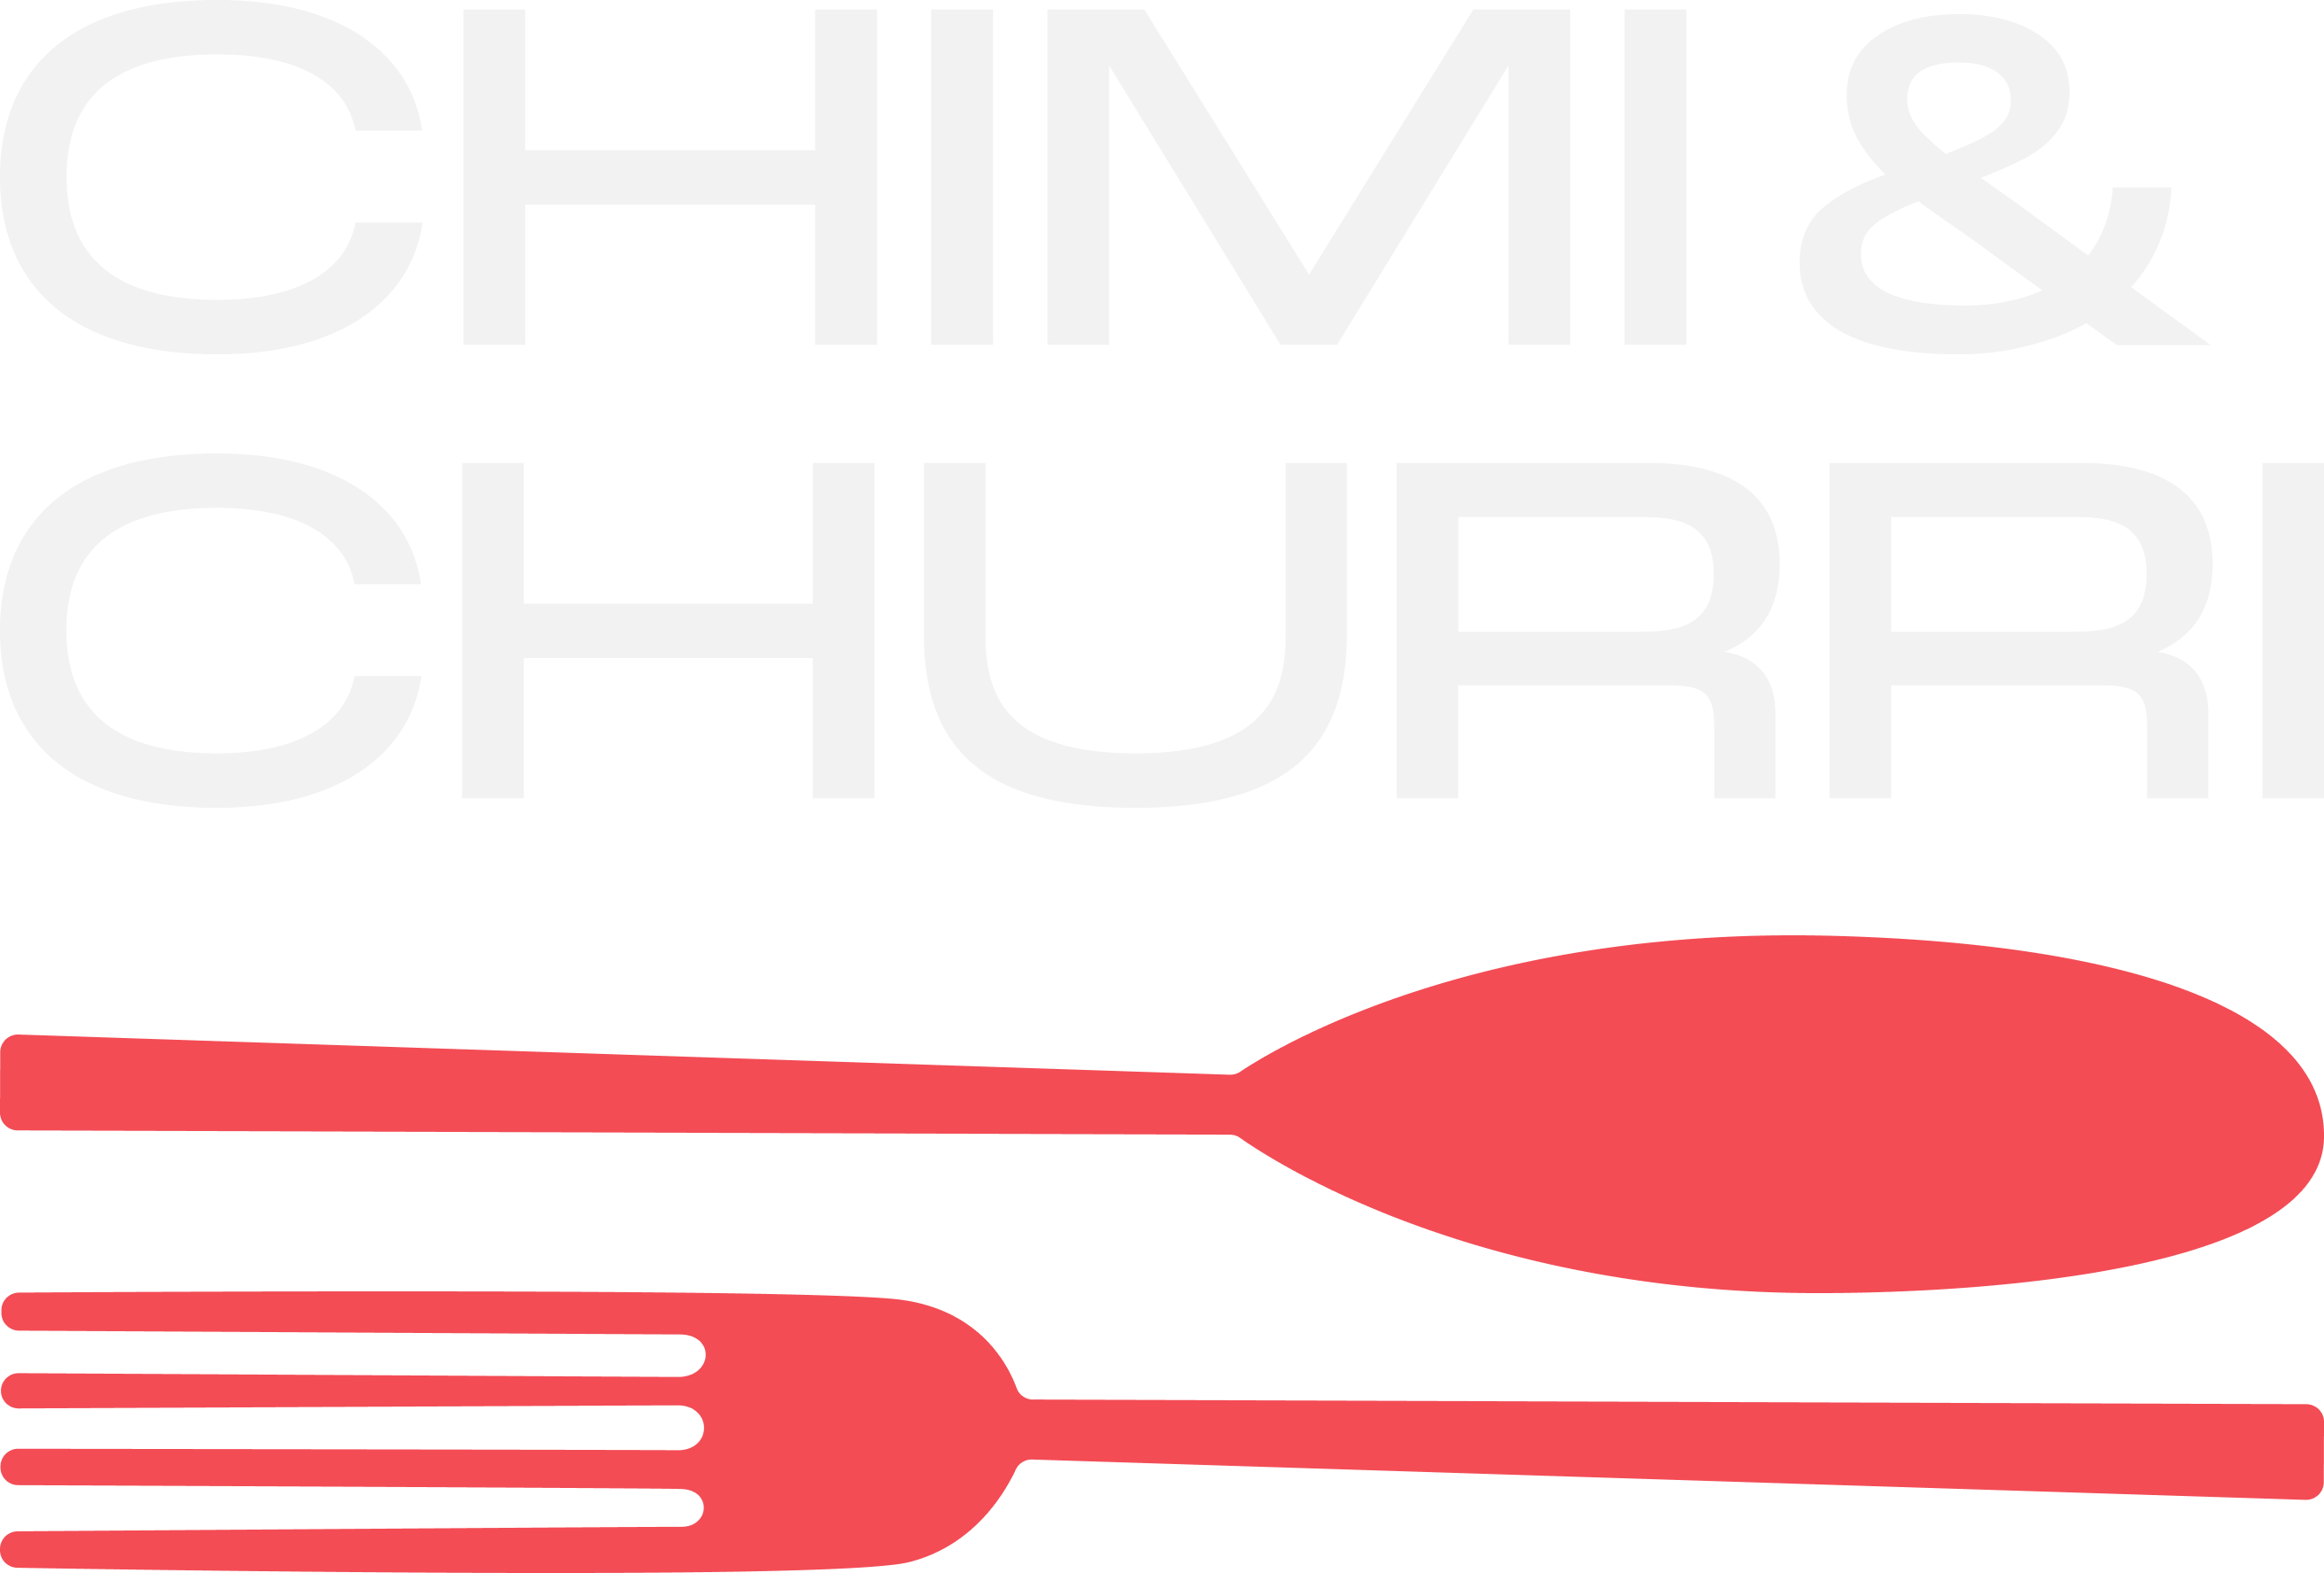 Chimi & Churri